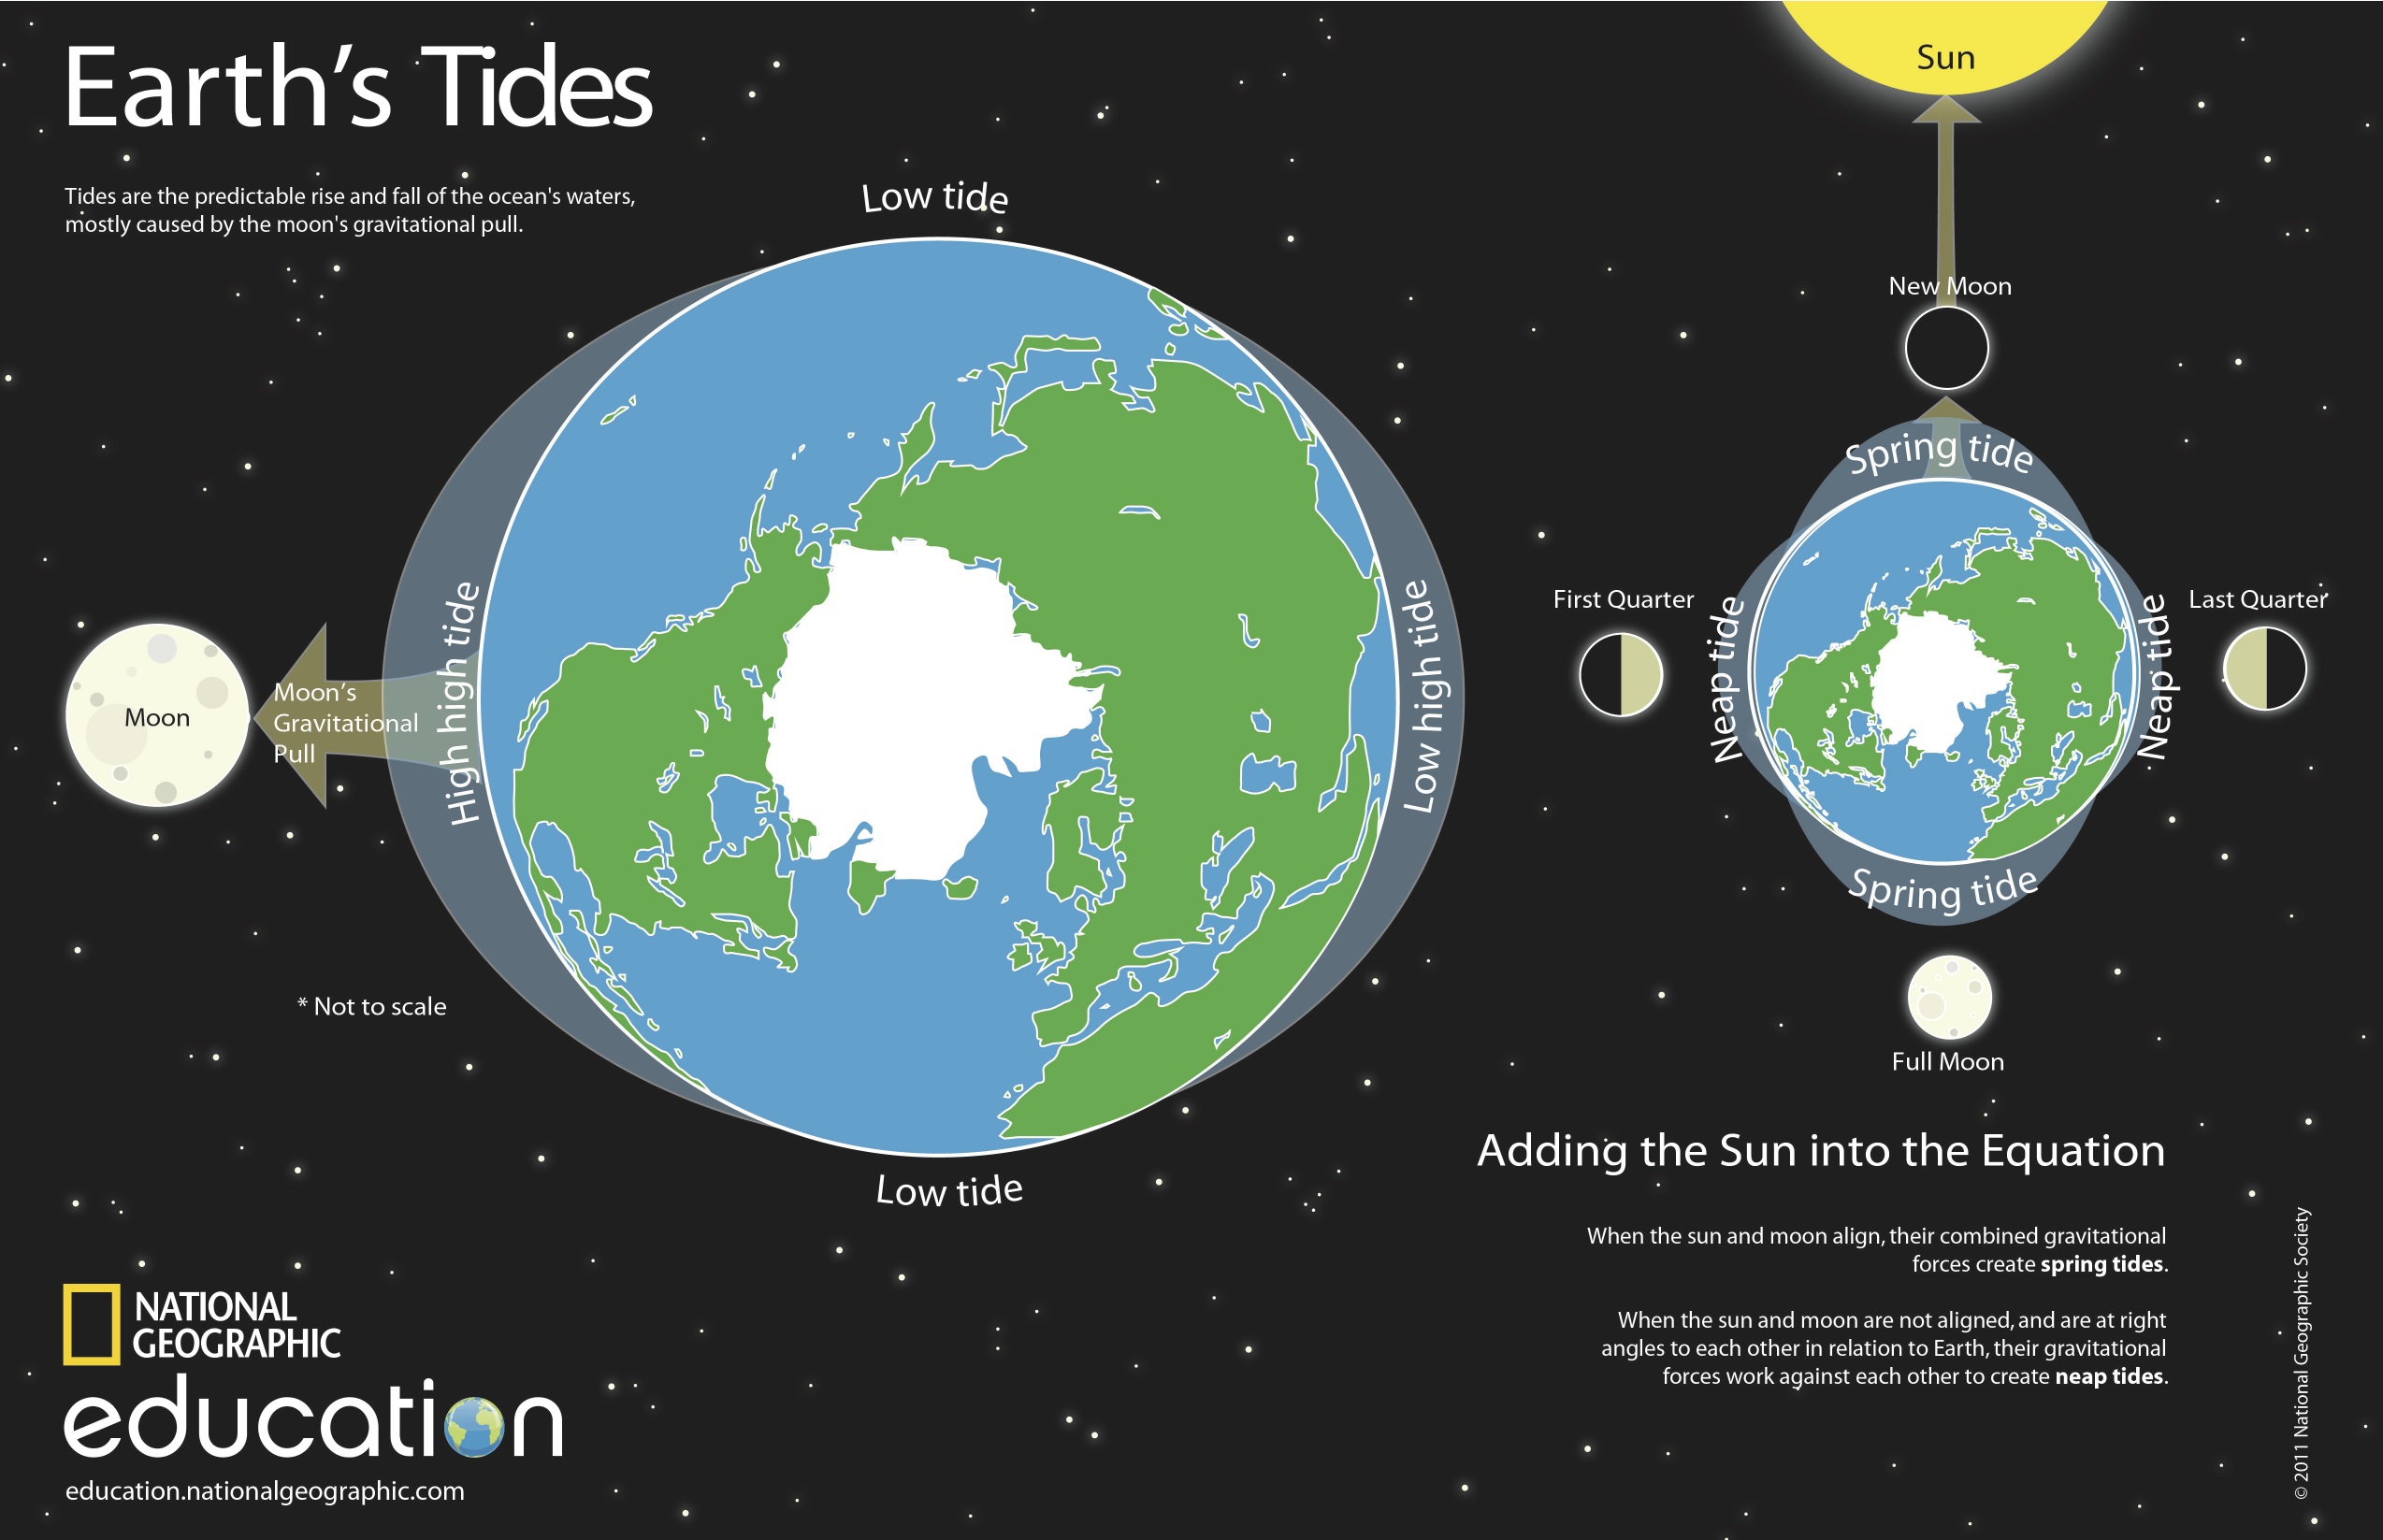 King Tides Rule | Nat Geo Education Blog